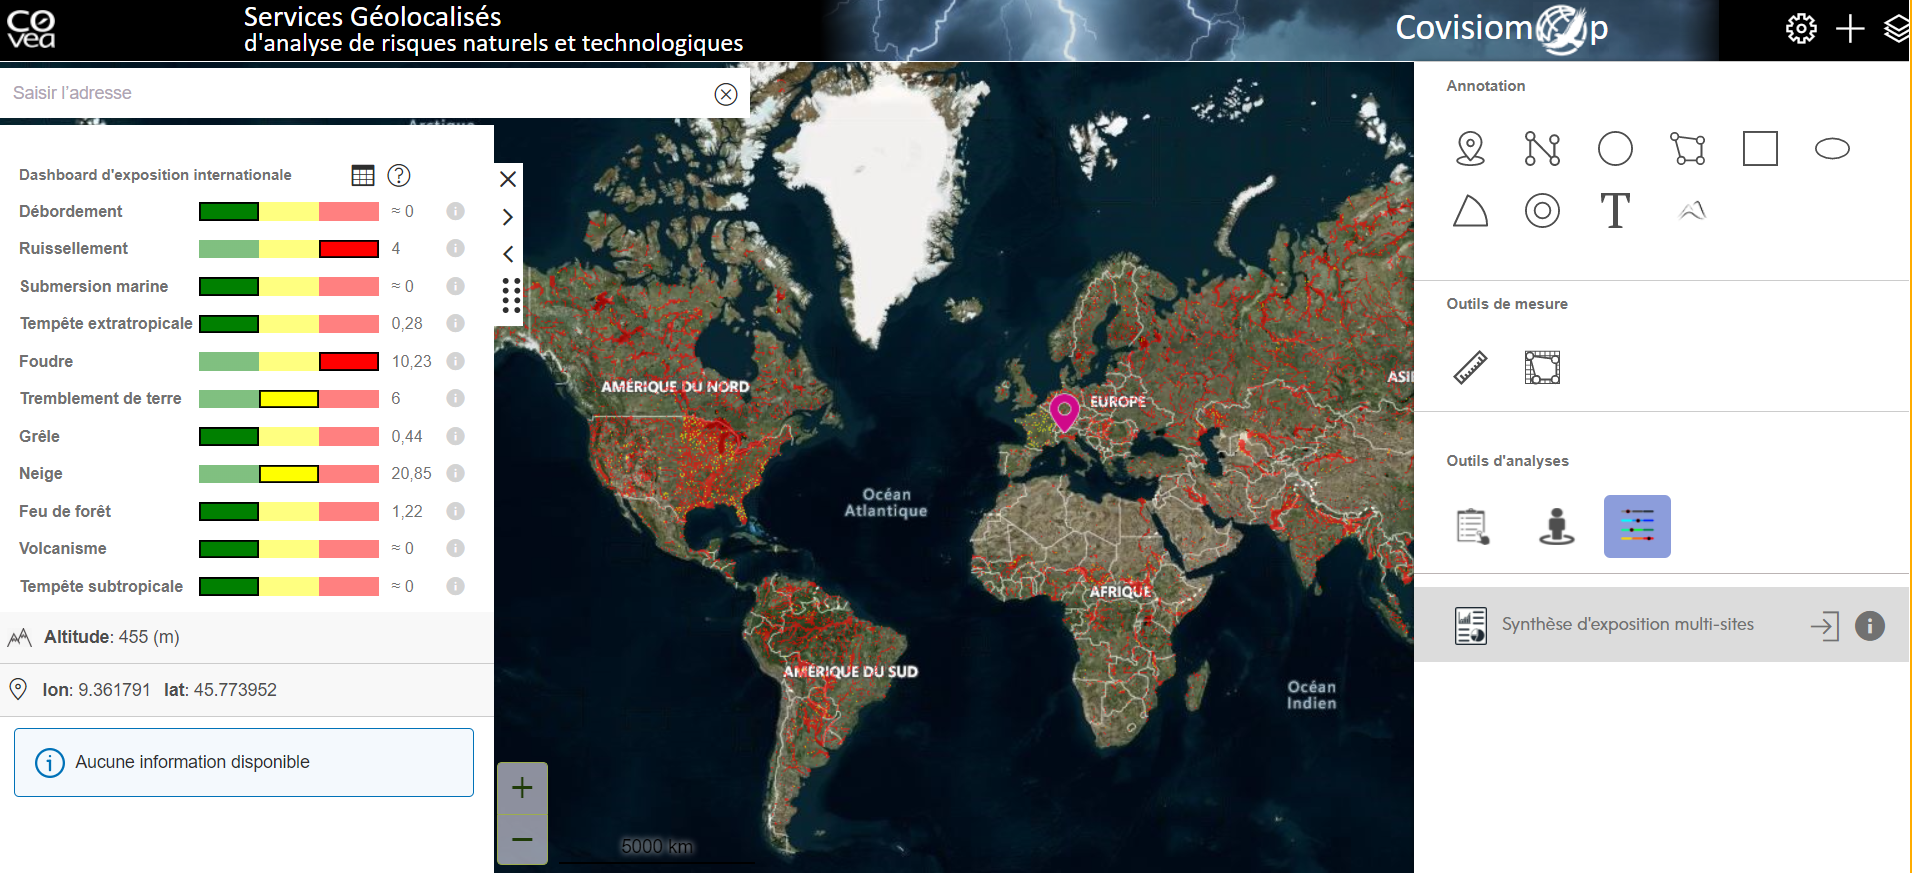 capture écran montrant la cartographie des risques climatiques dans le monde